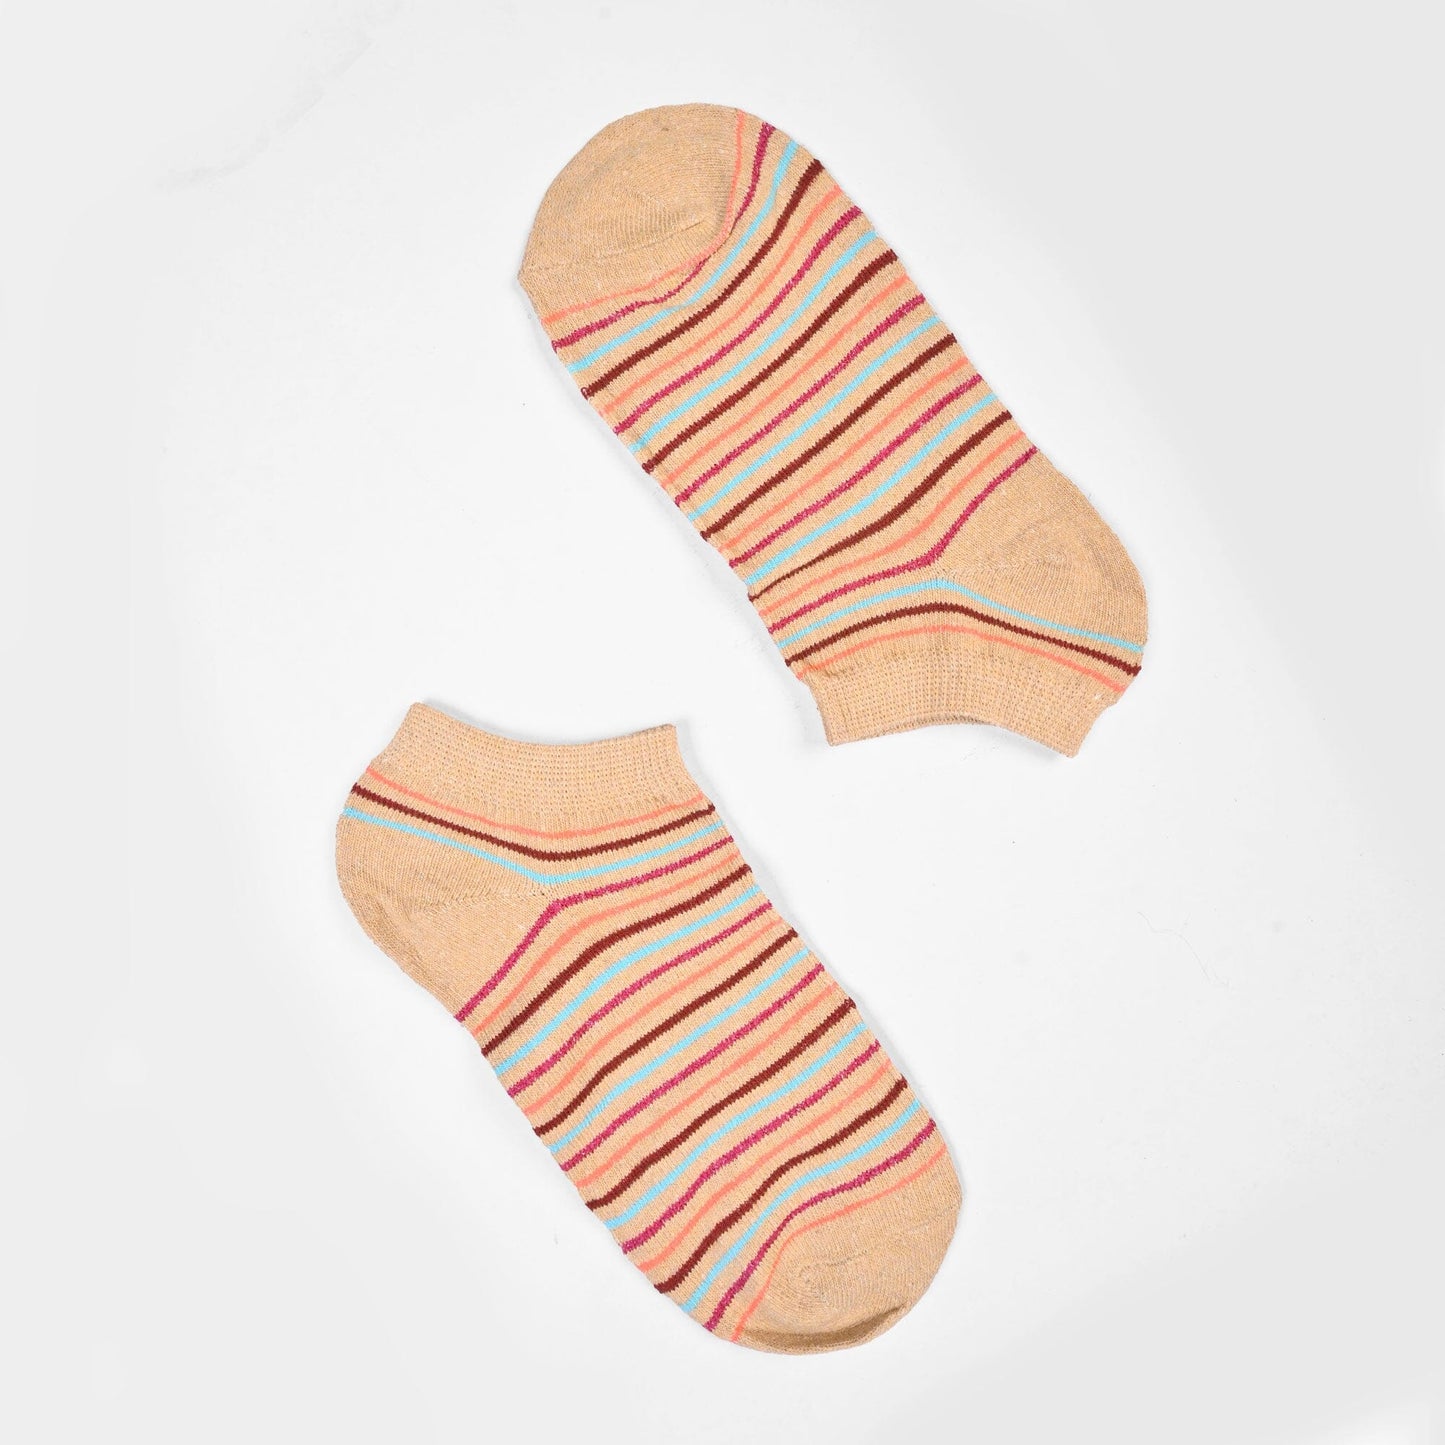 Rauma Women's Classic Anklet Socks Socks SRL Skin D2 EUR 35-40